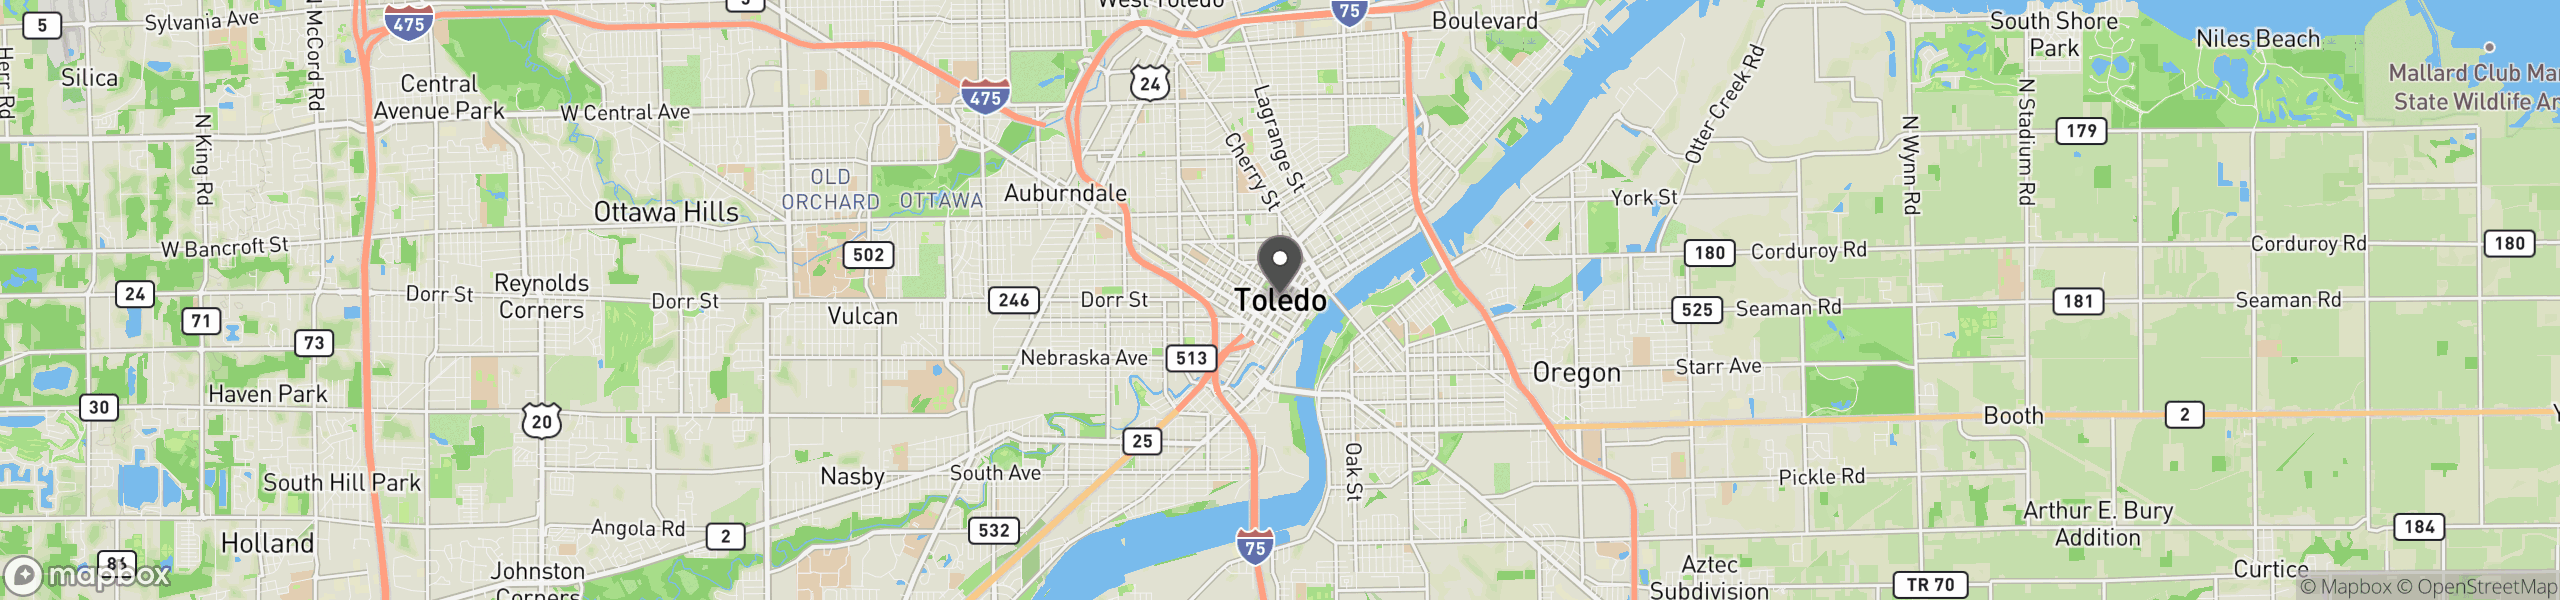 Toledo, OH 43601